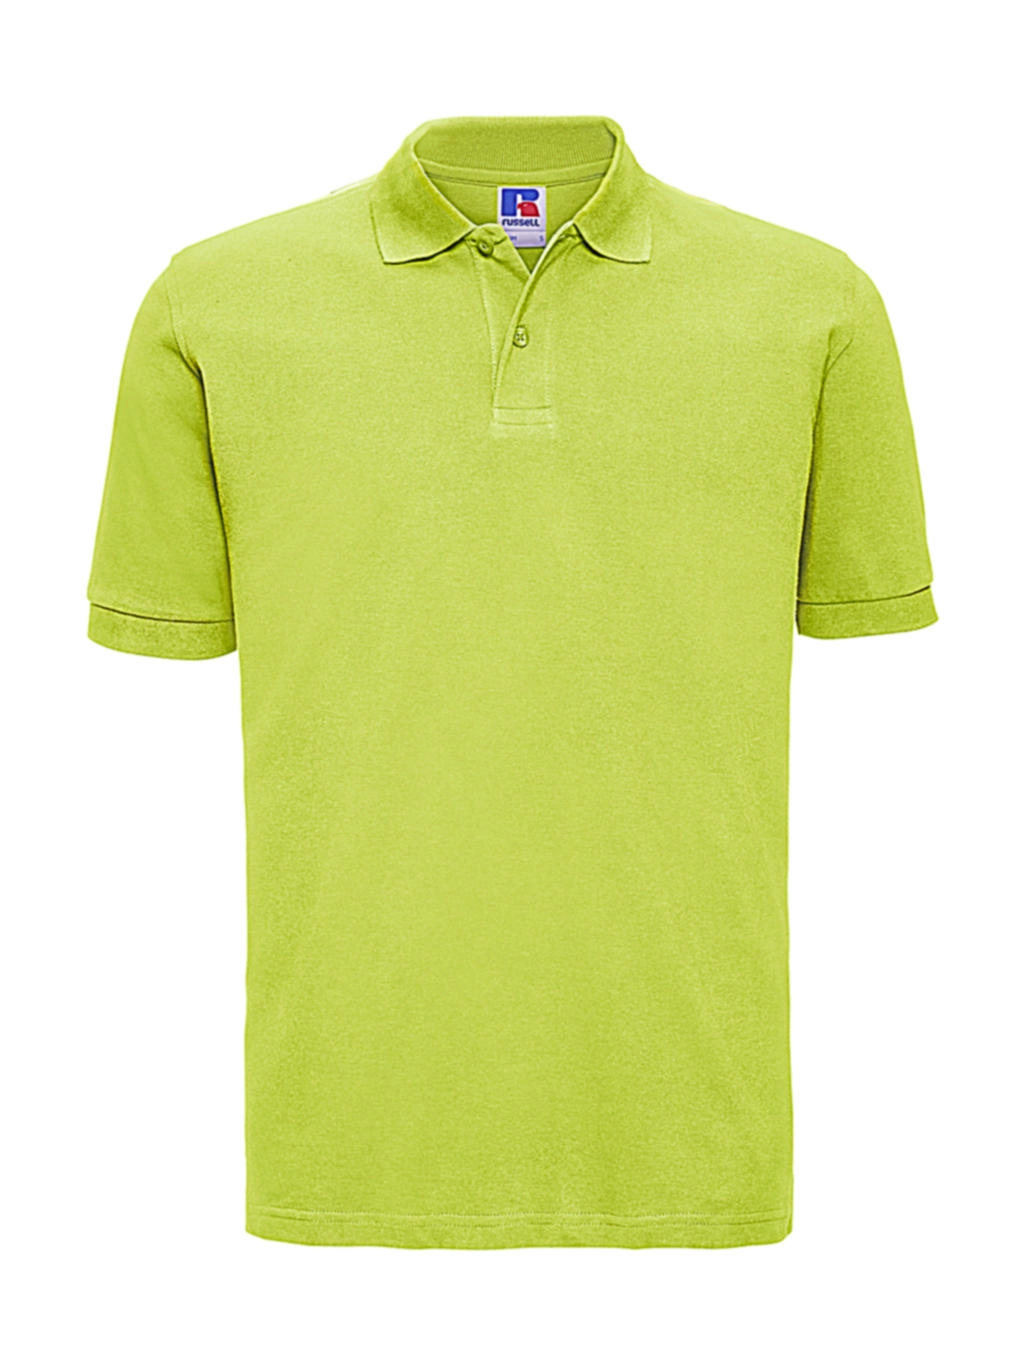 Men`s Classic Cotton Polo zum Besticken und Bedrucken in der Farbe Lime mit Ihren Logo, Schriftzug oder Motiv.